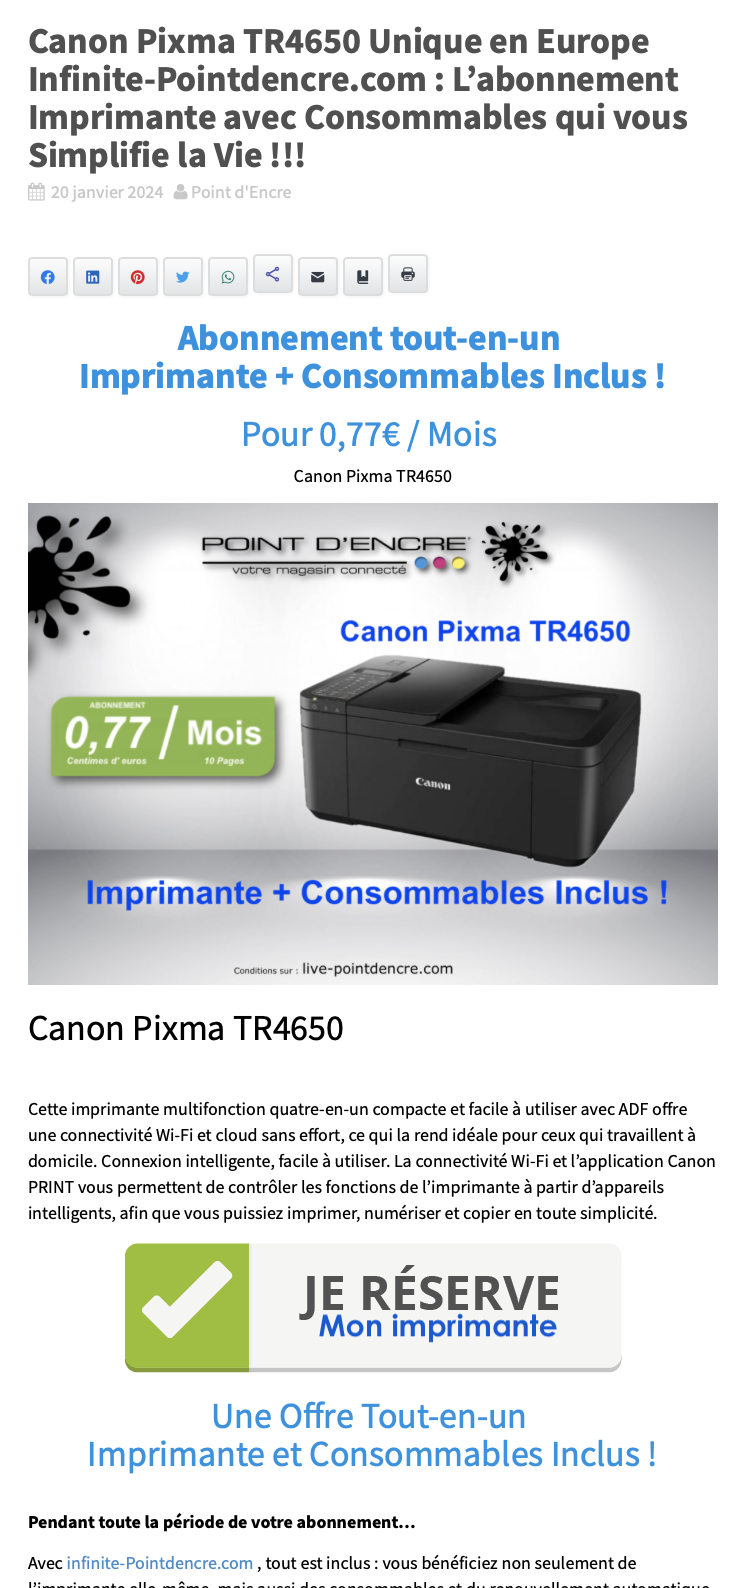 Canon Pixma TR4650 Unique en Europe Infinite-Pointdencre.com : L’abonnement Imprimante avec Consommables qui vous Simplifie la Vie !!!